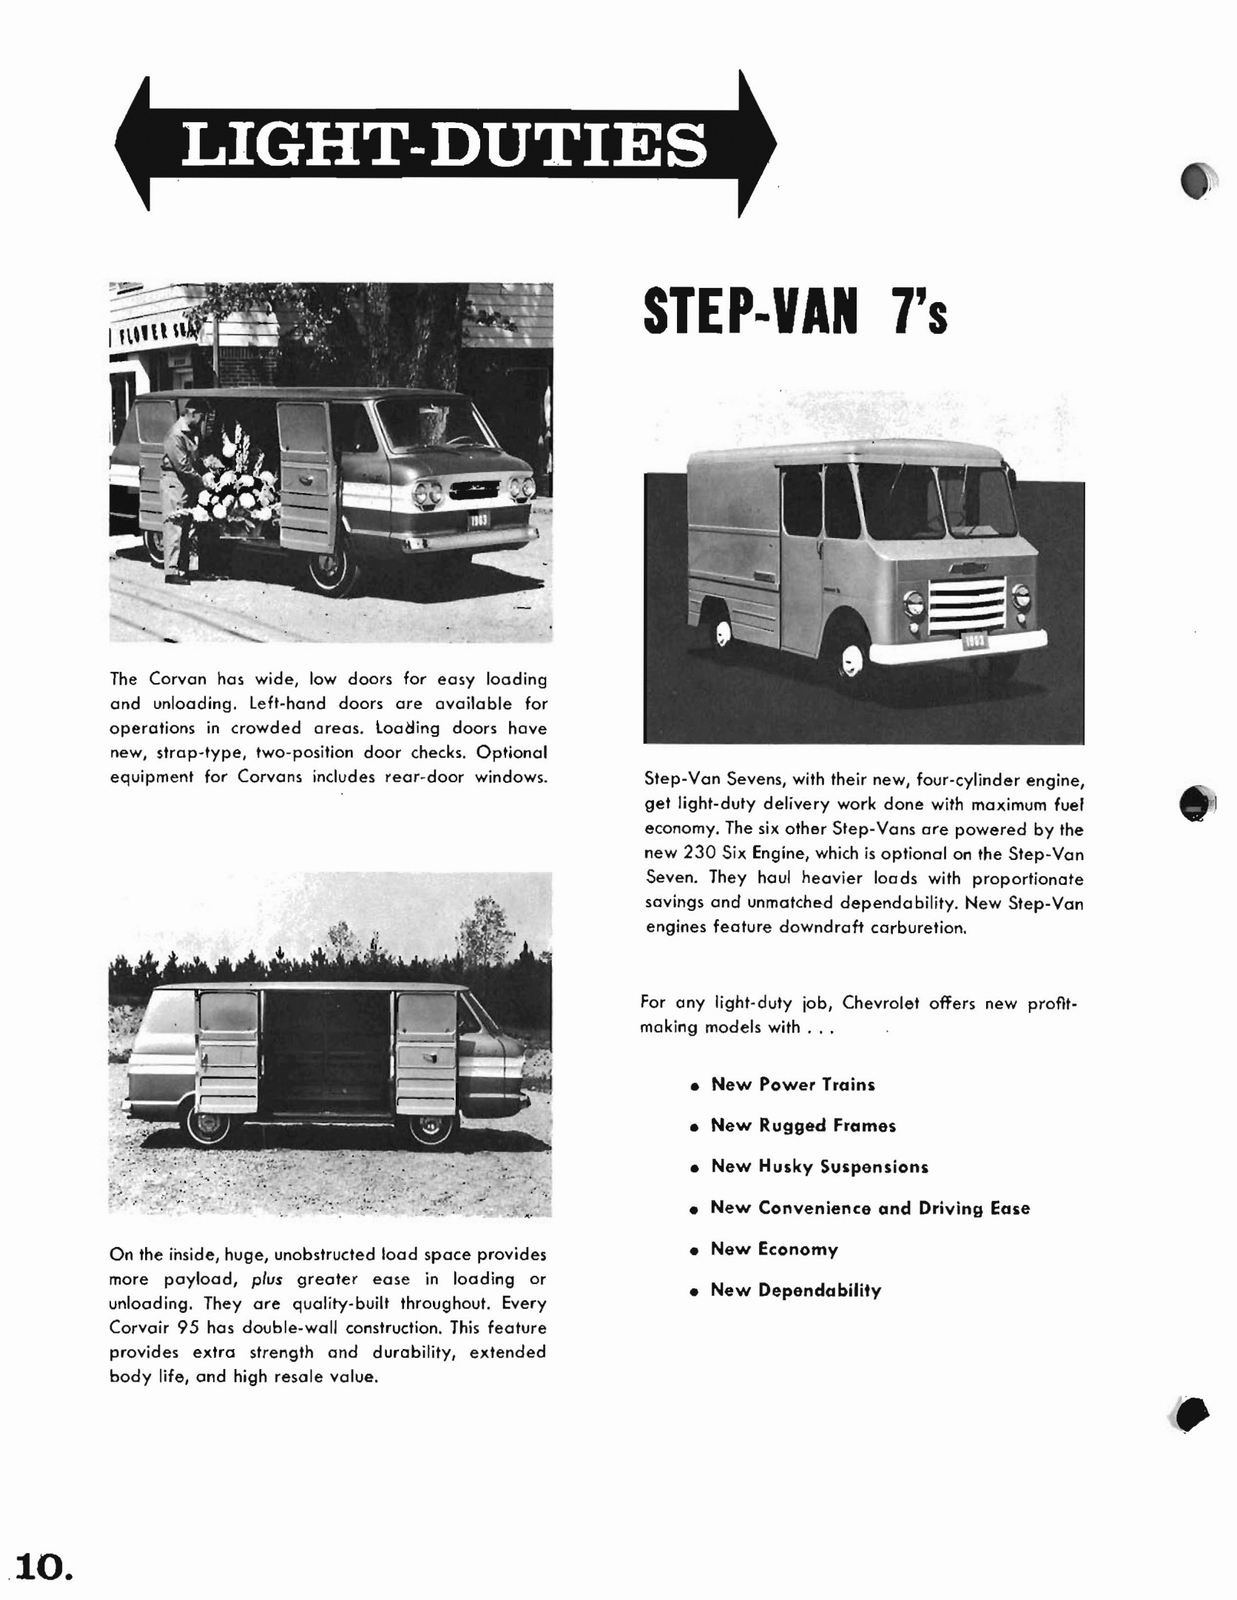 n_1963 Chevrolet Trucks Booklet-10.jpg